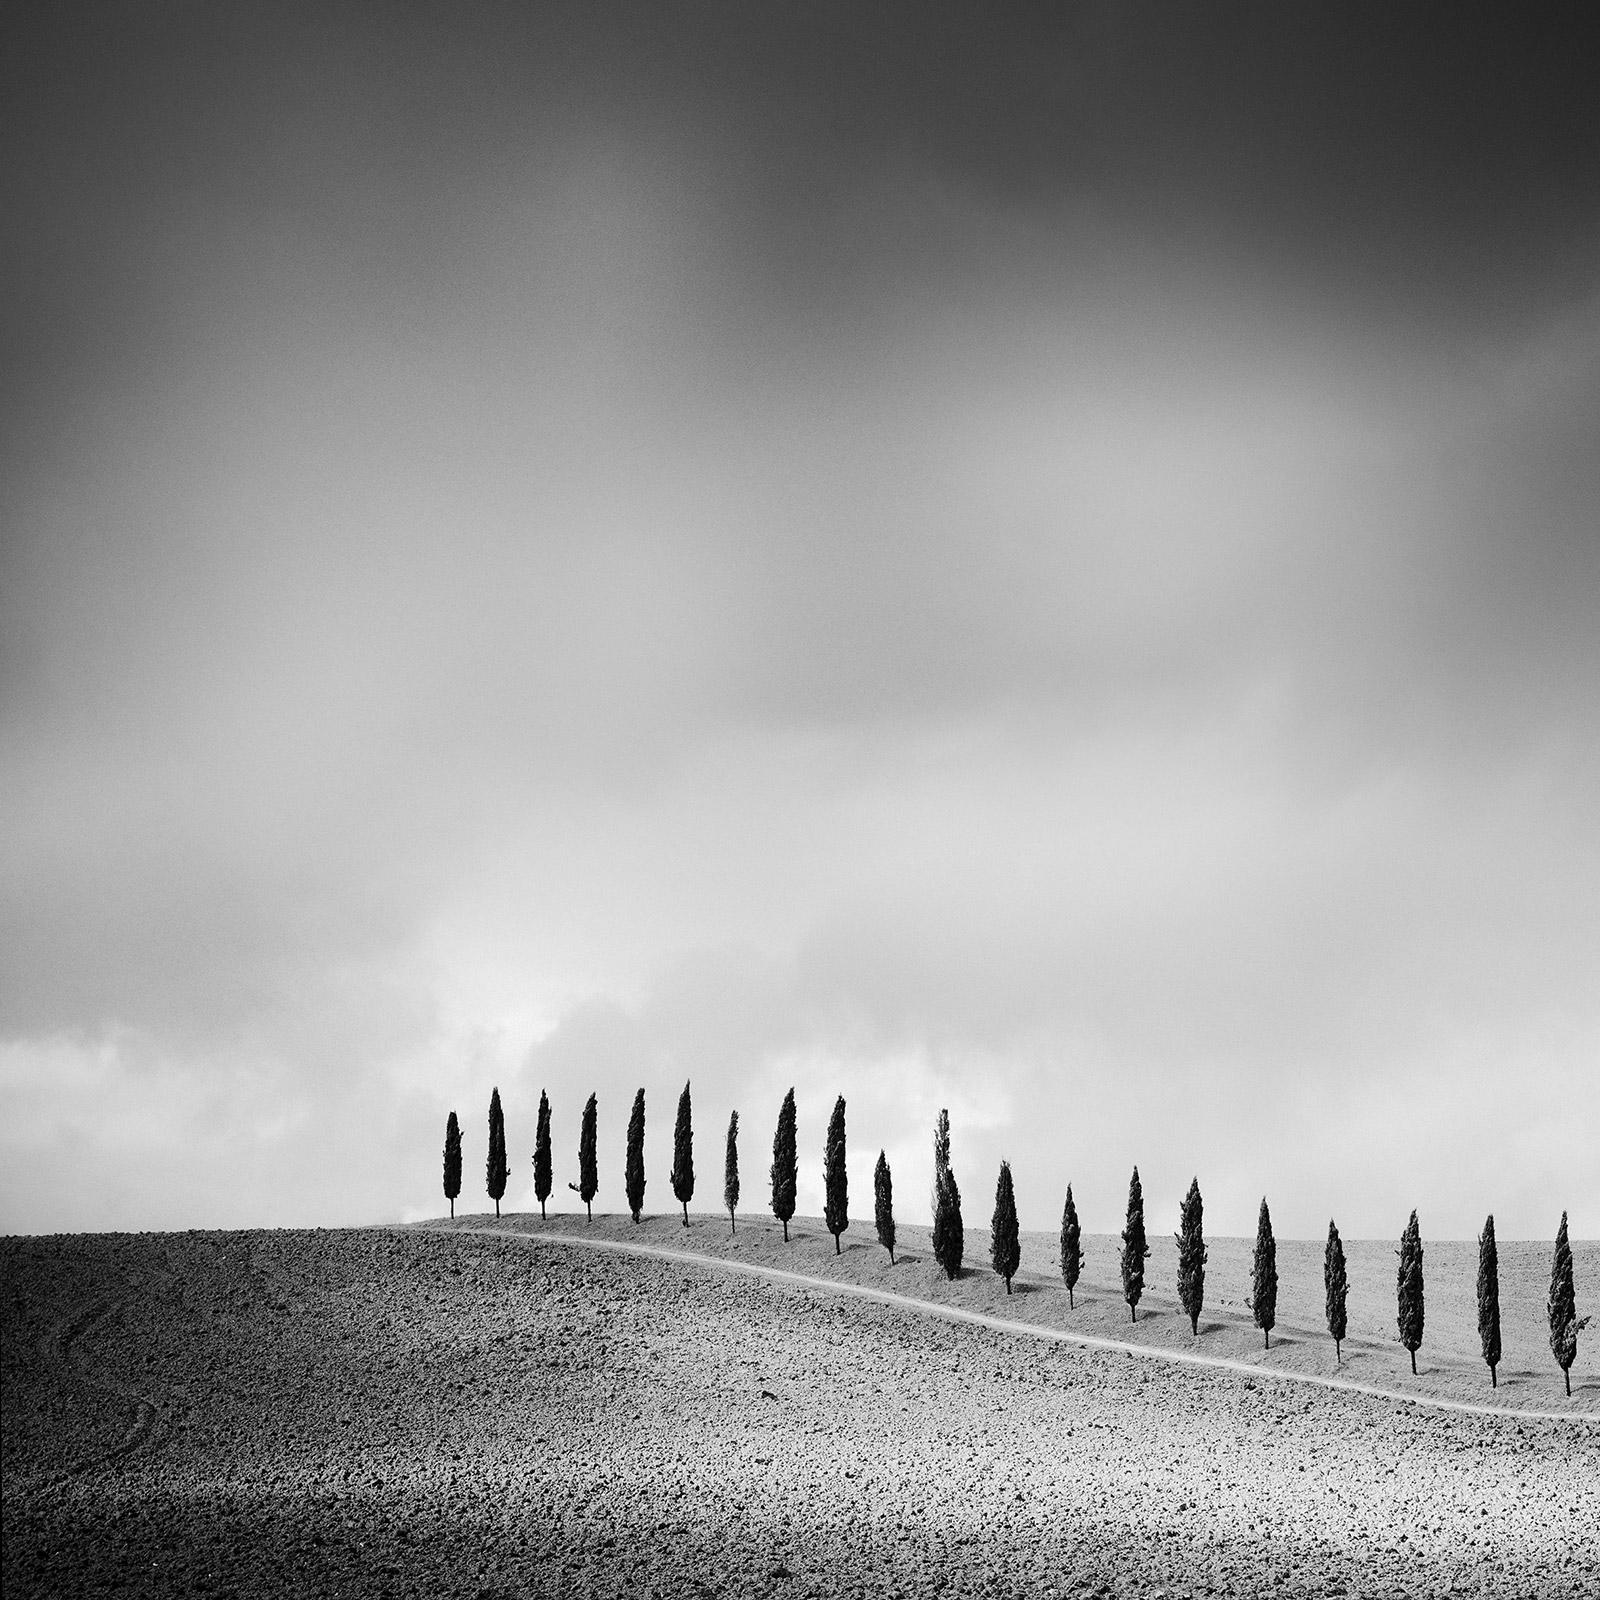 Landscape Photograph Gerald Berghammer - The Row of Cypress Trees, Toscane, photographie d'art en noir et blanc, paysage